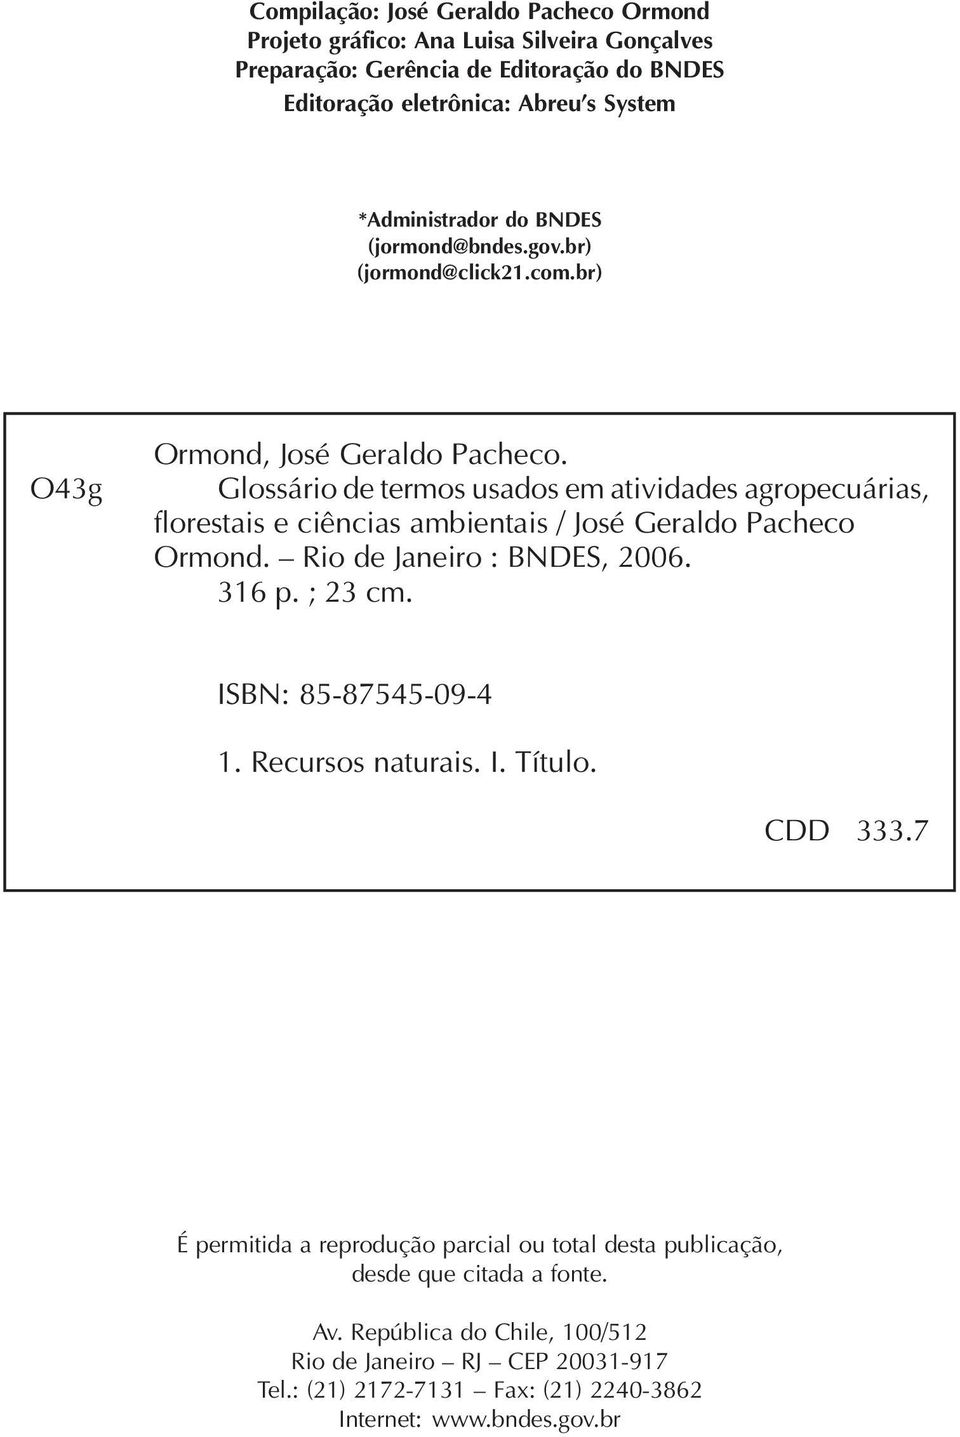 Glossário de termos usados em atividades agropecuárias, florestais e ciências ambientais / José Geraldo Pacheco Ormond. Rio de Janeiro : BNDES, 2006. 316 p. ; 23 cm.